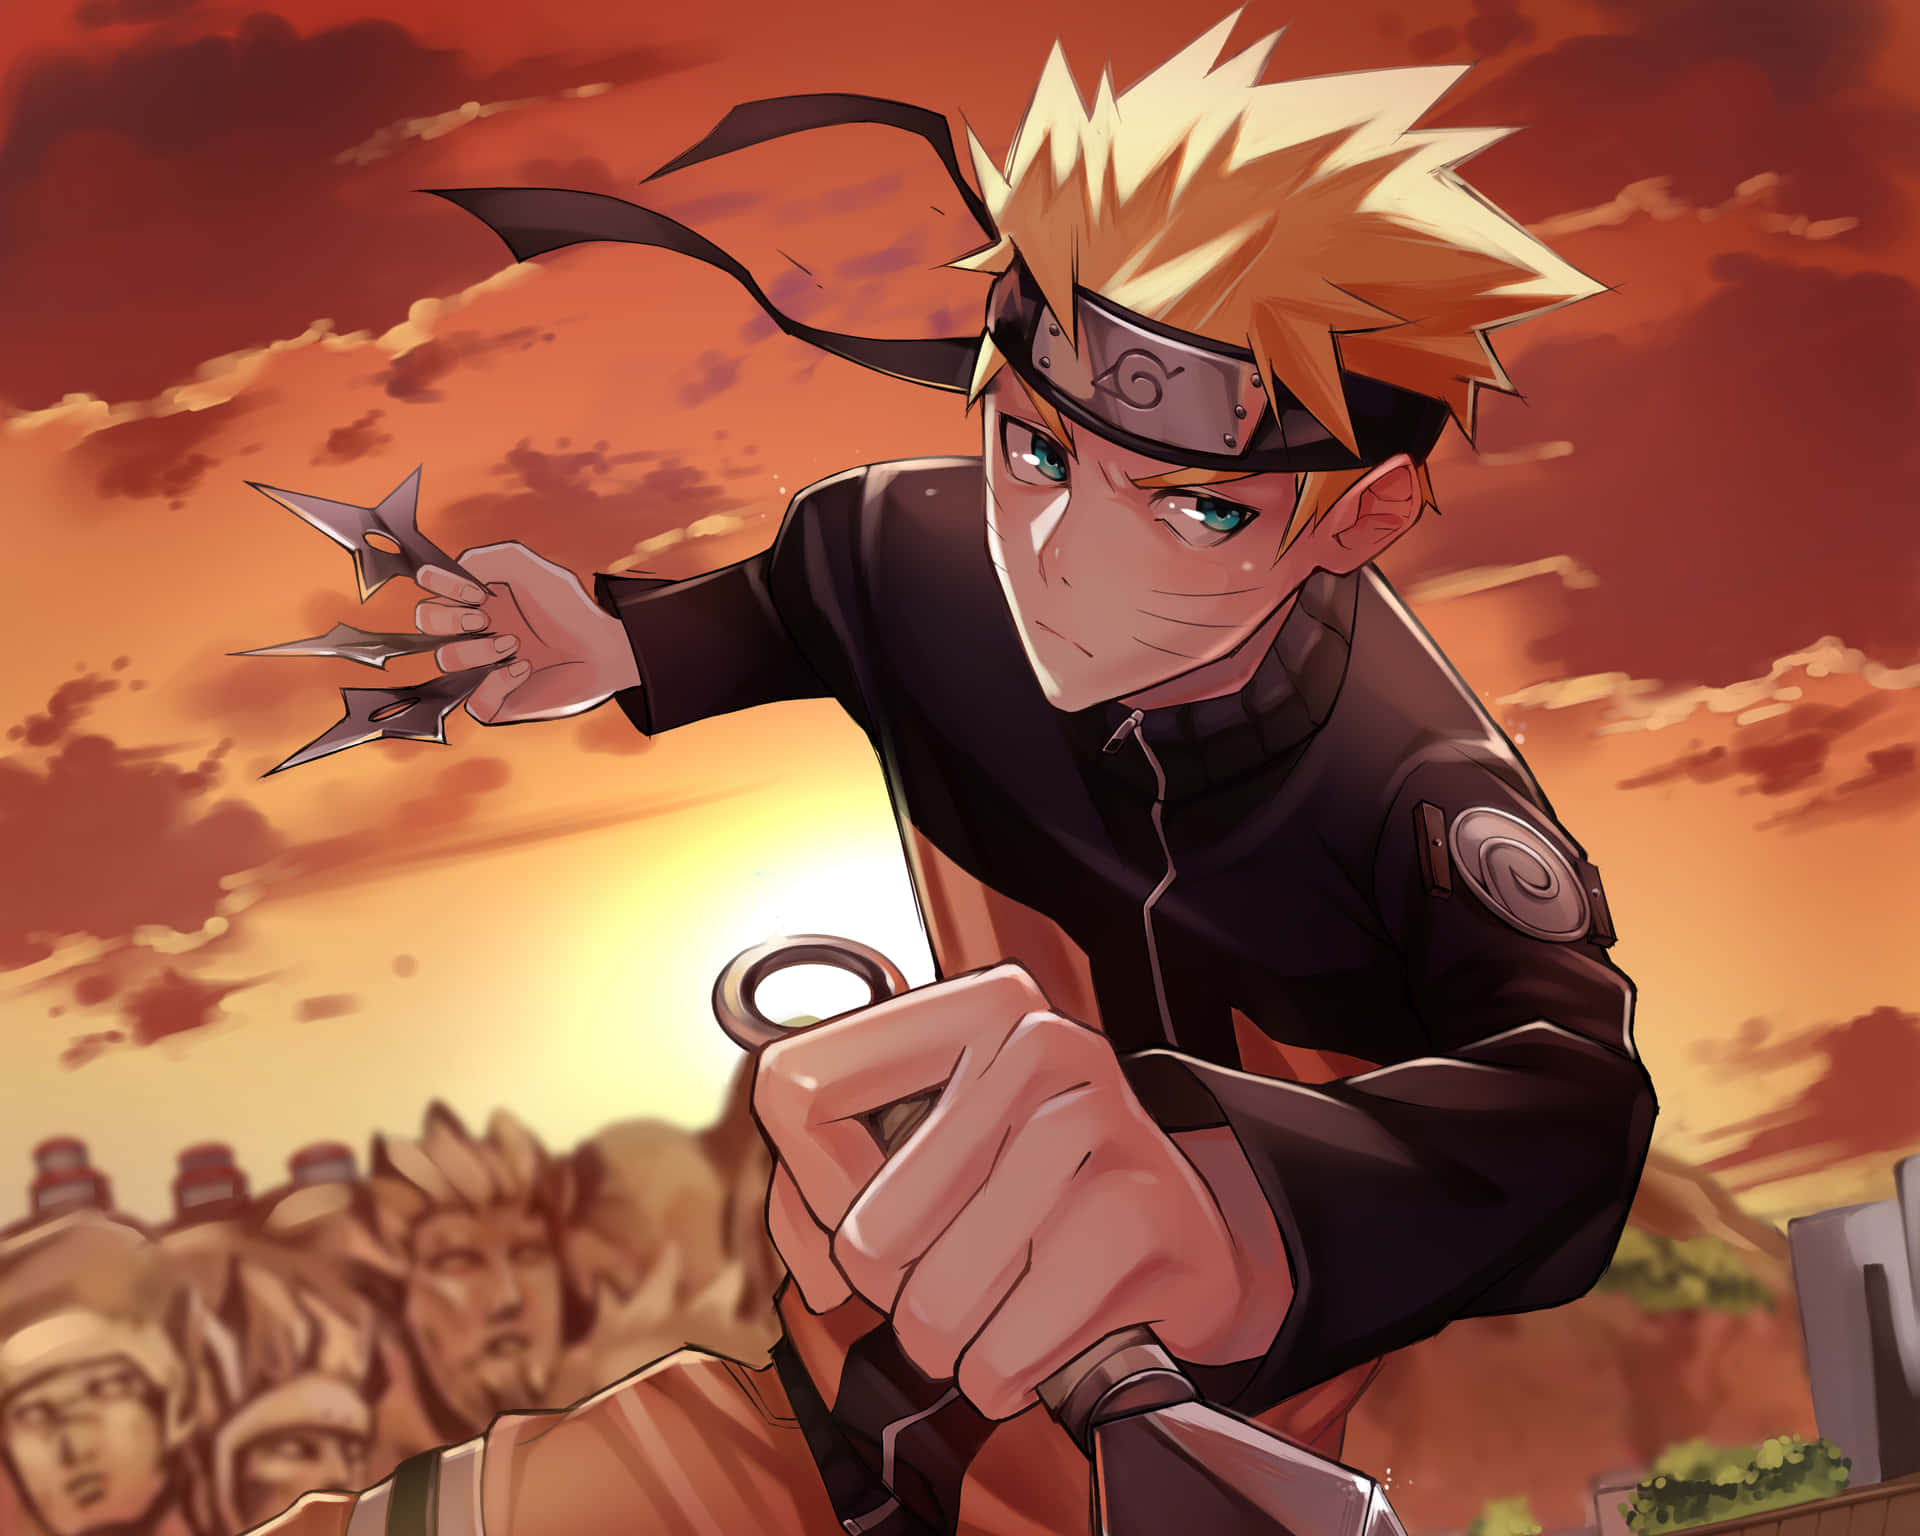 "Dreams can become reality" - Naruto Uzumaki